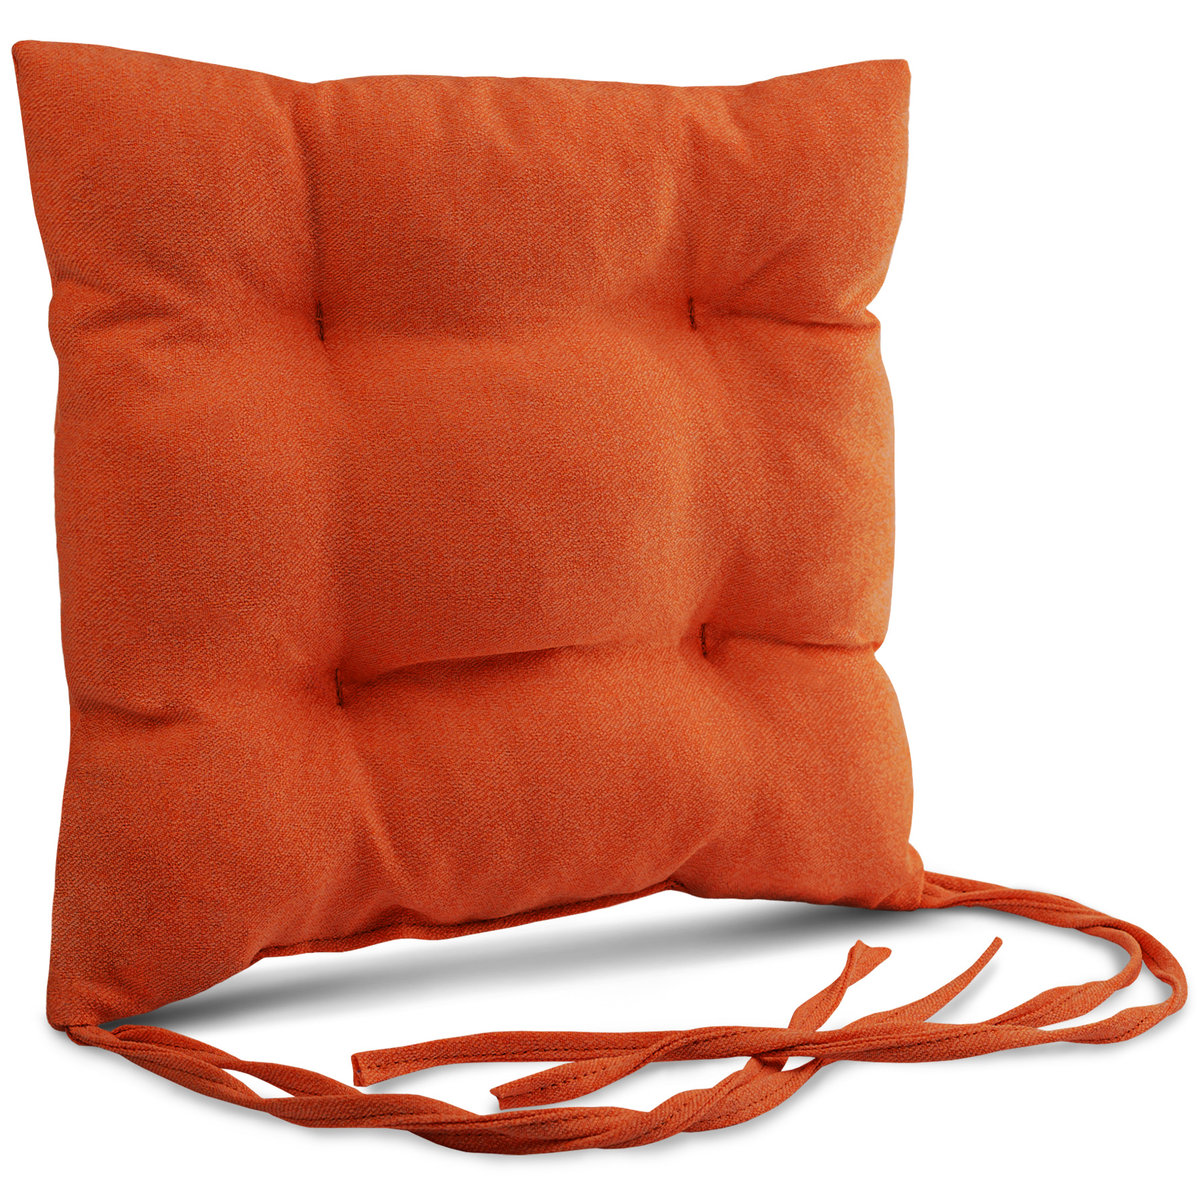 Poduszka ogrodowa na krzesło 40x40 cm w kolorze pomarańczowym ze sznureczkami do przywiązania